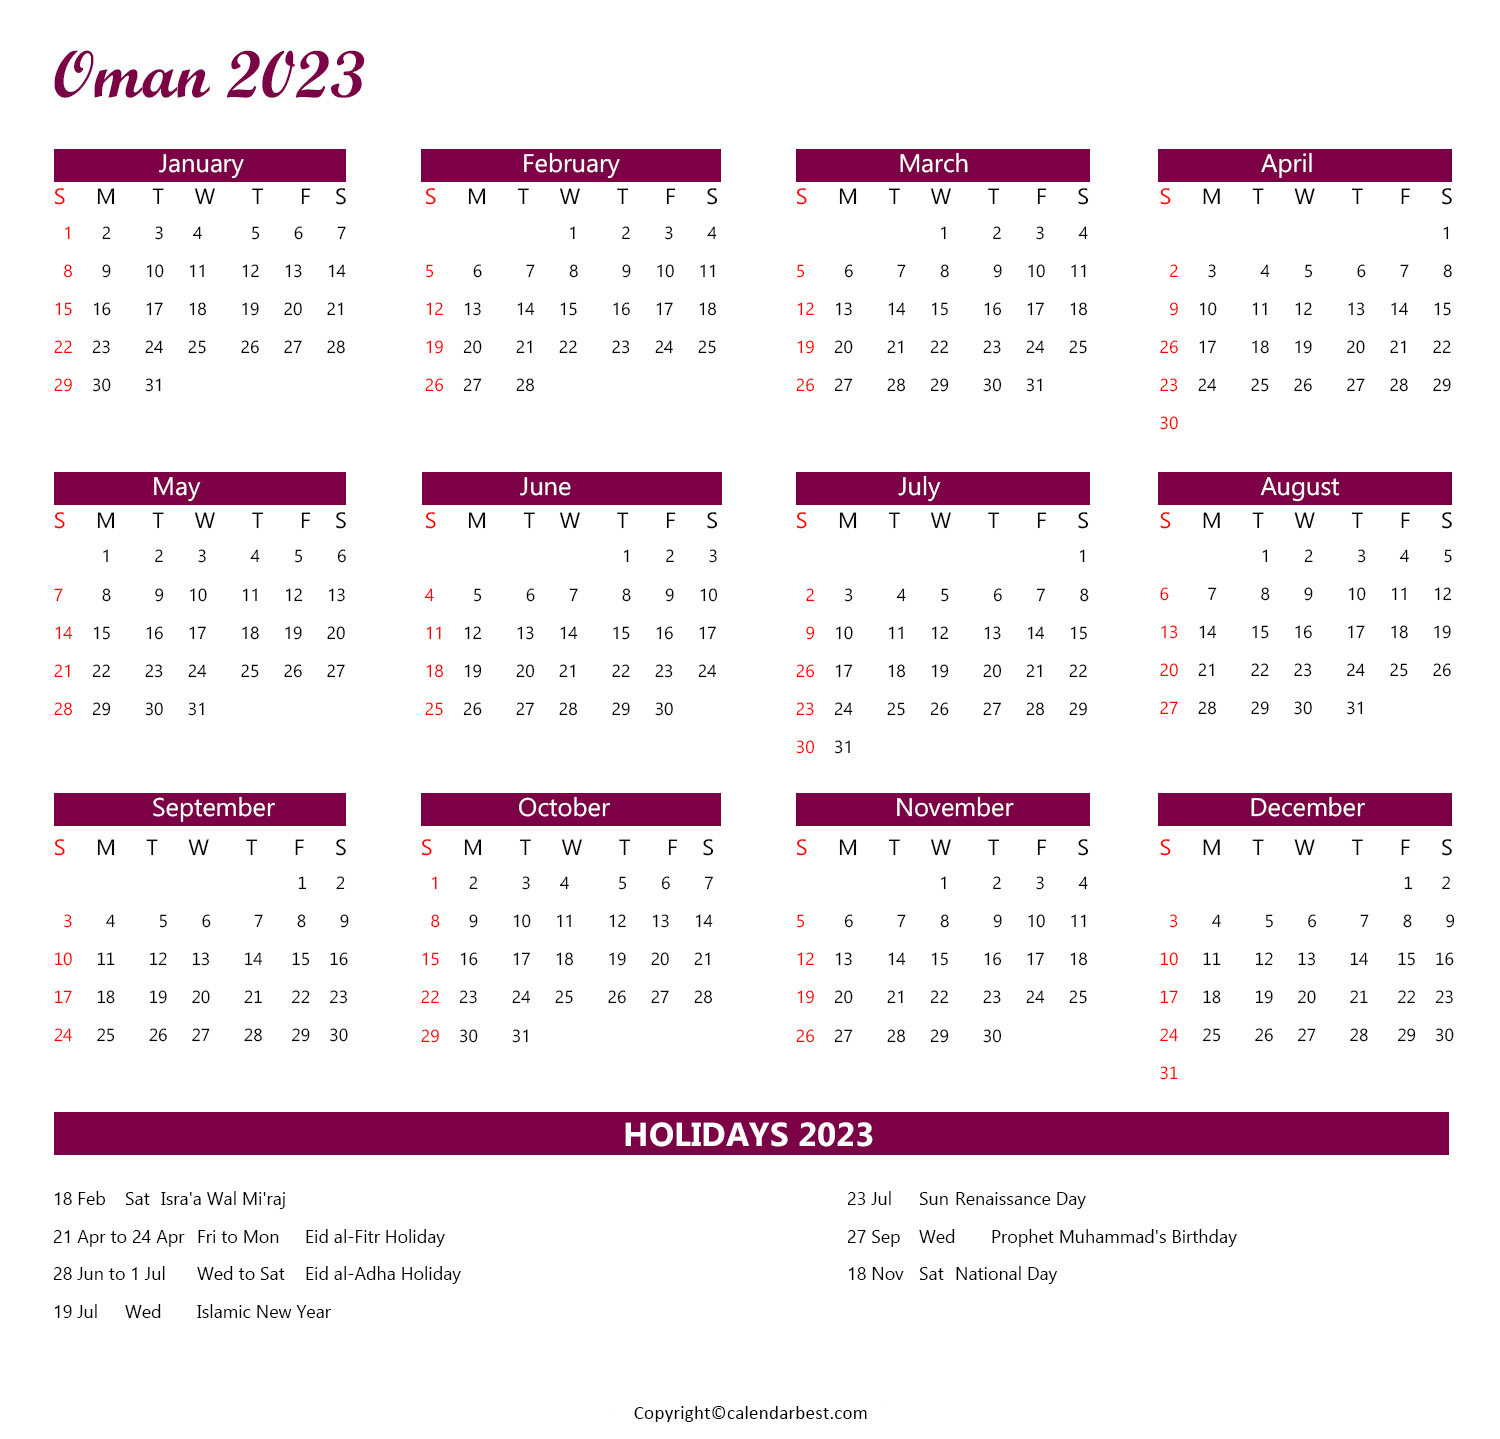 Oman Calendar 2023 with Holidays